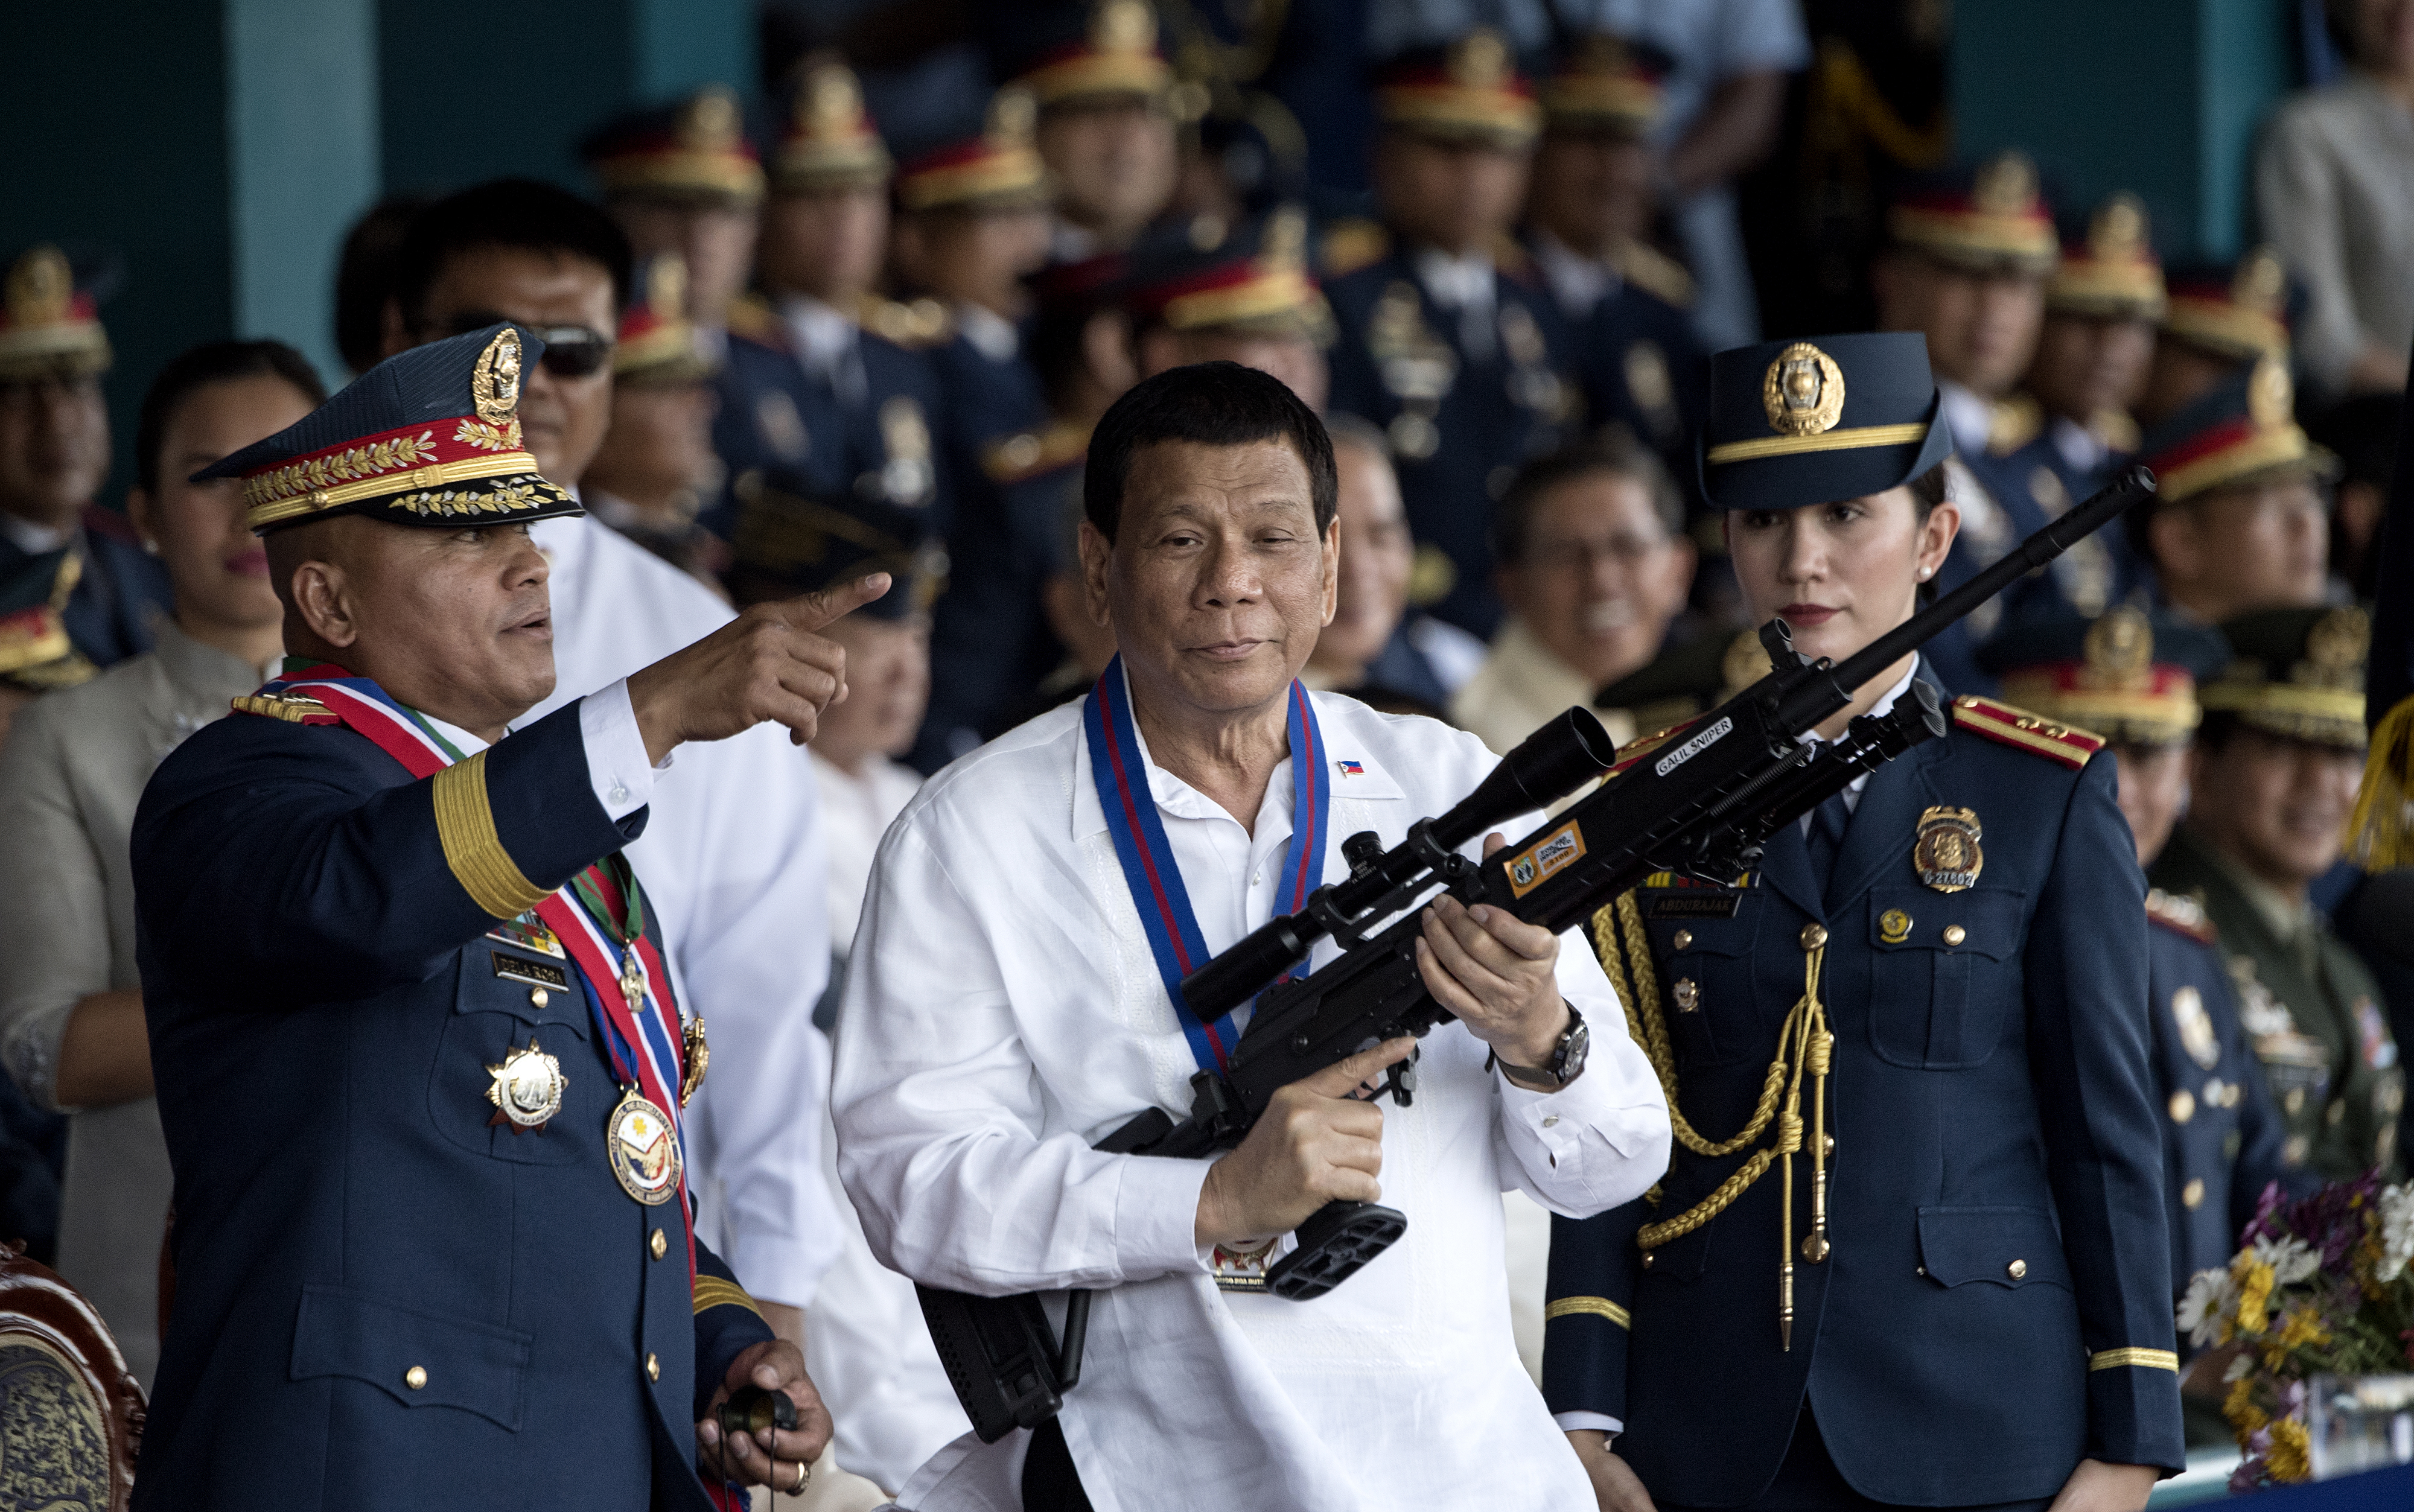 Duterte holnap Izraelbe látogat, hogy fegyvereket vegyen